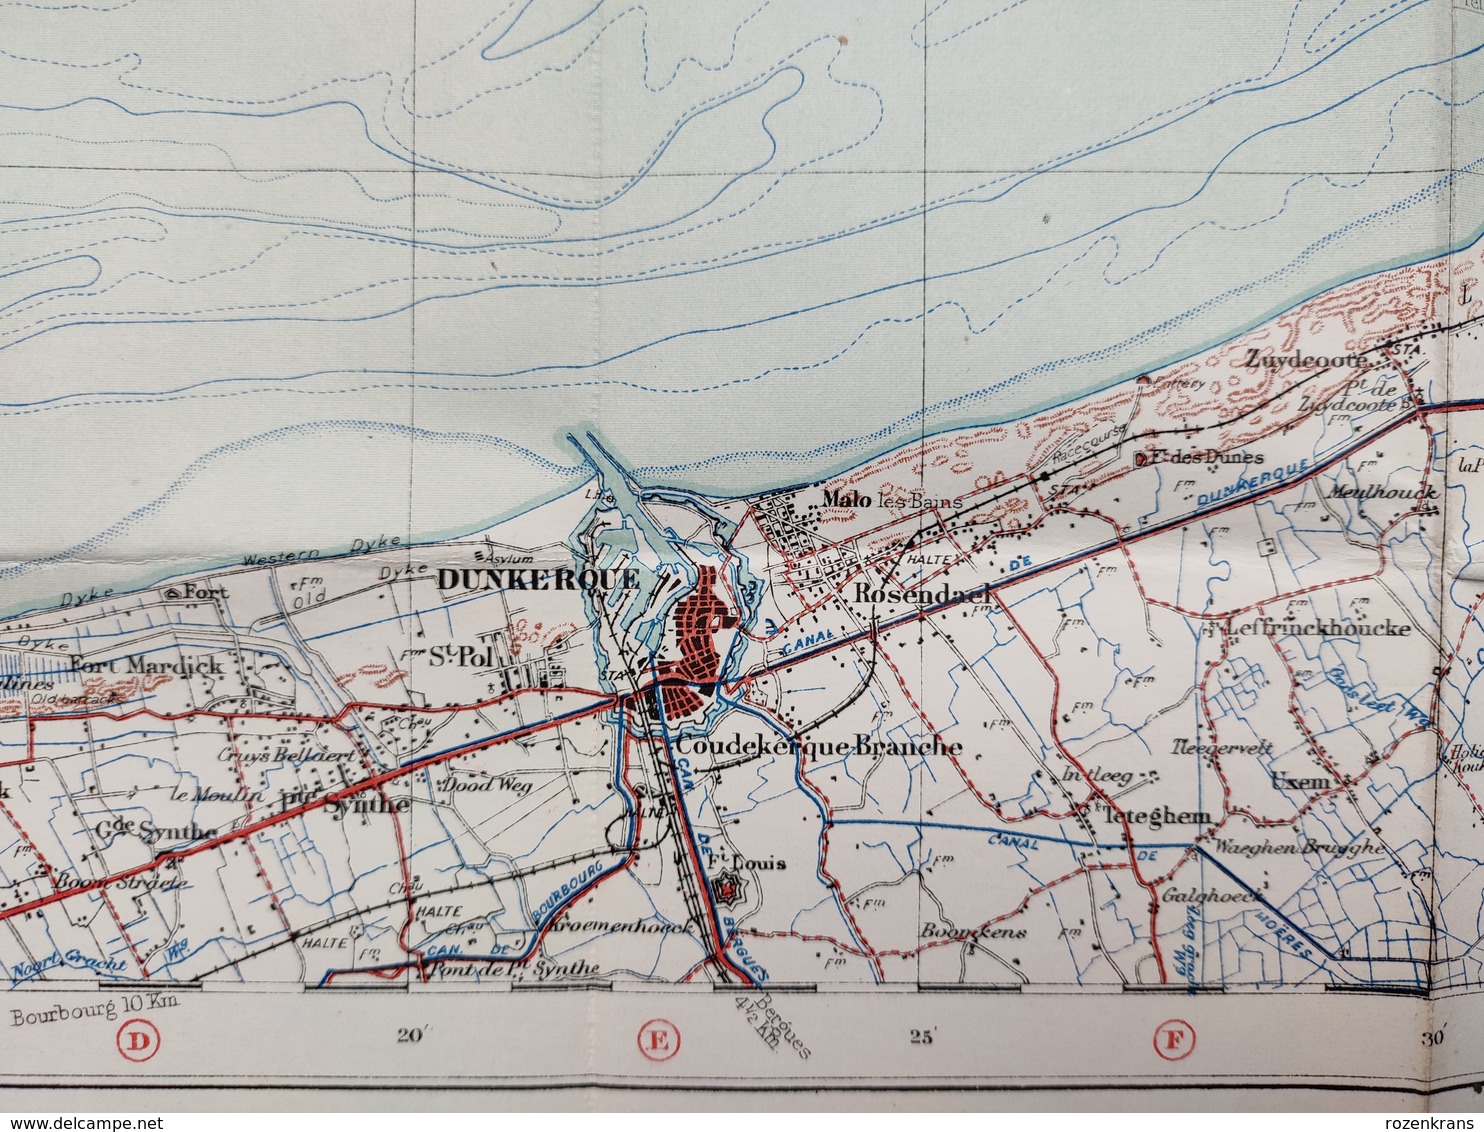 Carte Topographique Militaire UK War Office 1917 World War 1 WW1 Dunkerque Oostende Nieuwpoort De Panne Veurne Diksmuide